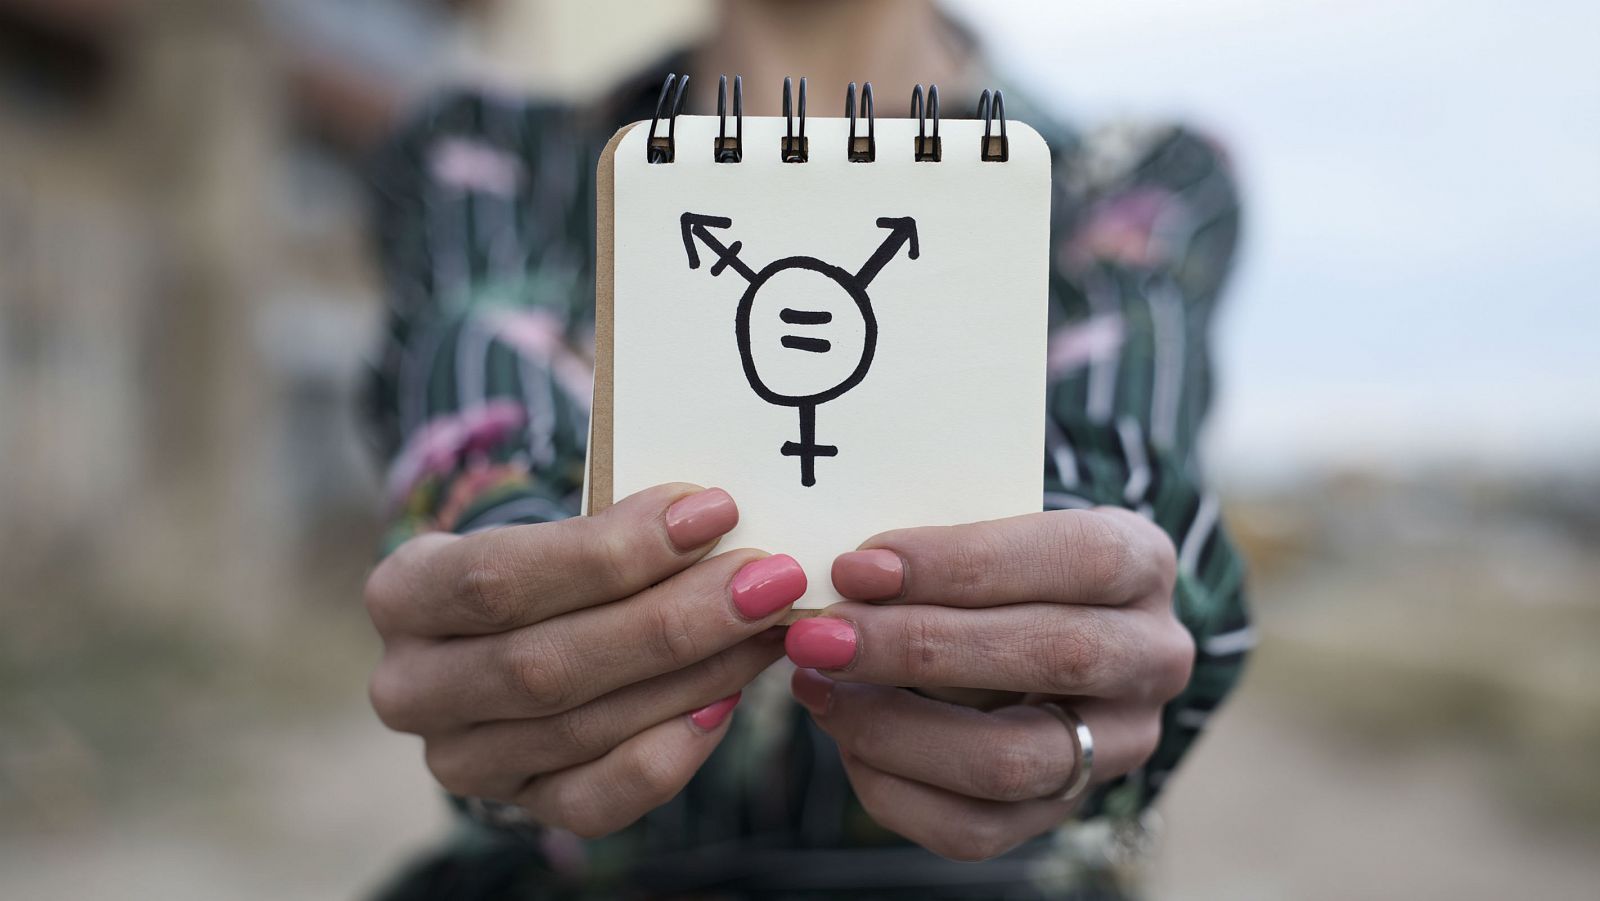 Mujeres trans: discriminación por partida doble